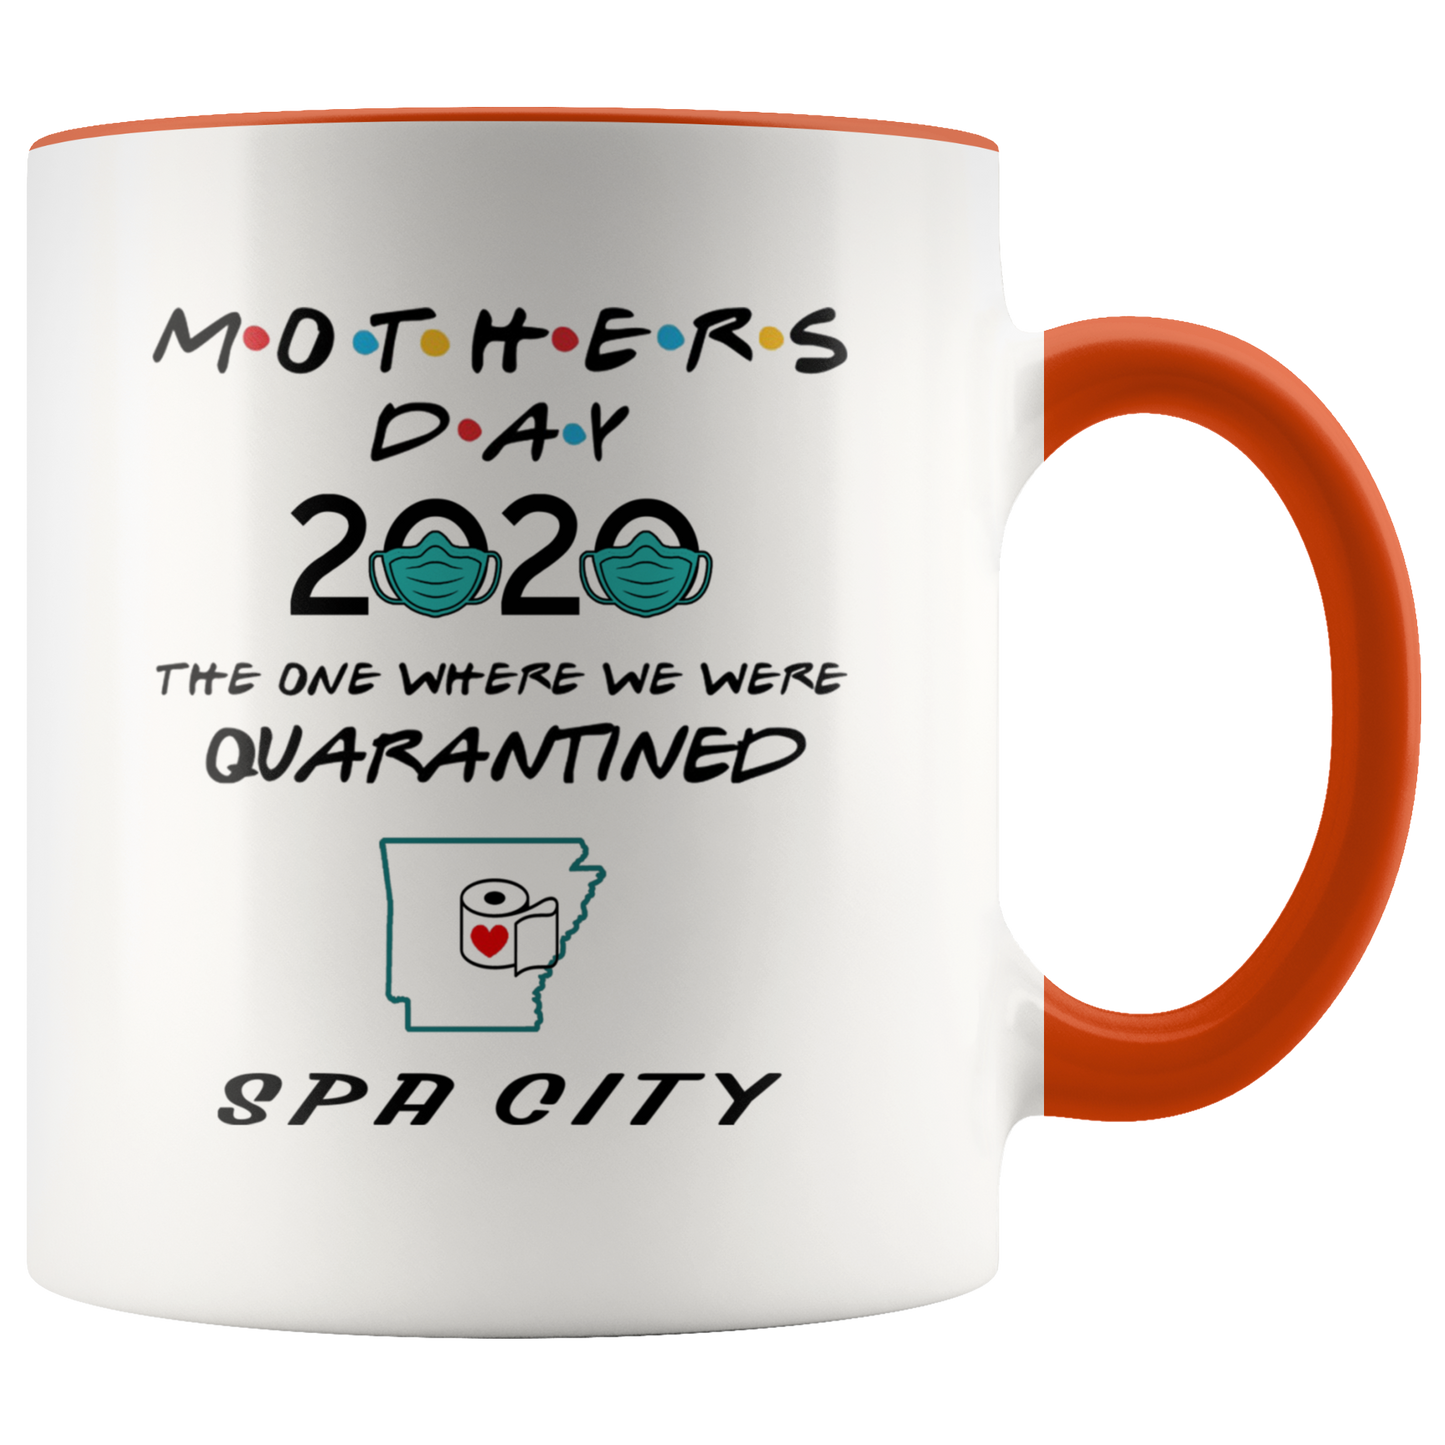 MUG01221353508-sp-27308 - [ Spa City | Arkansas ] (CC_Accent_Mug_) Mothers Day 2020 Mug Quarantine - The One Where We Were Quar